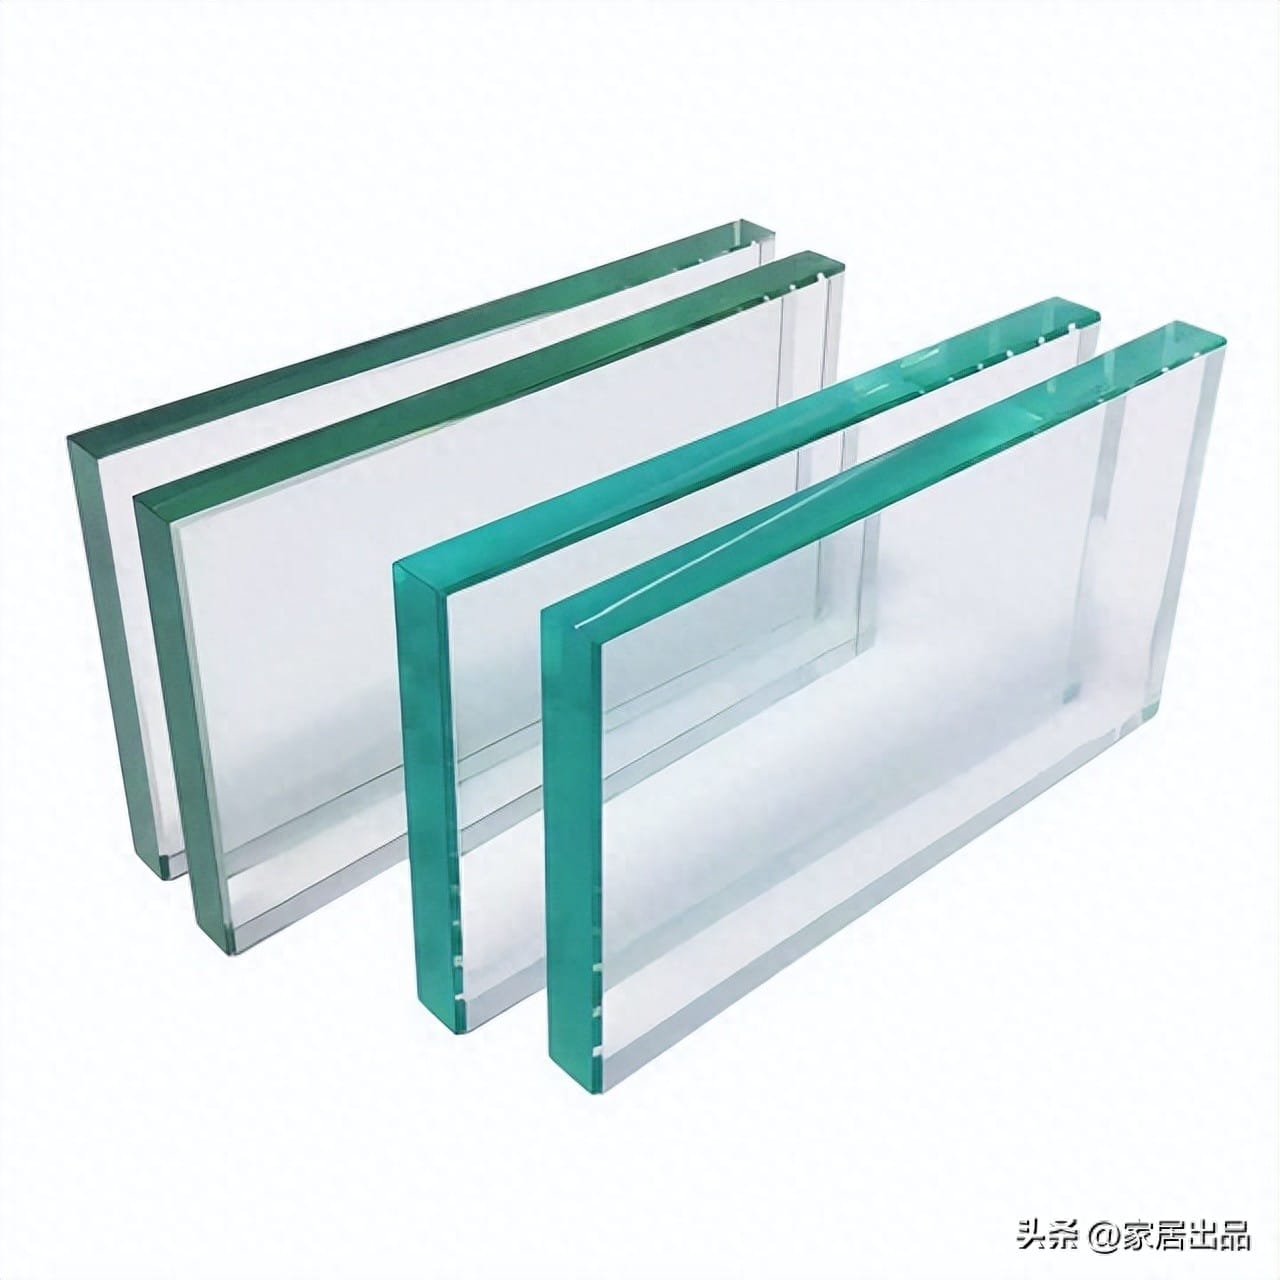 阳光房顶玻璃用什么遮太阳 阳光房顶用什么玻璃安全(图2)